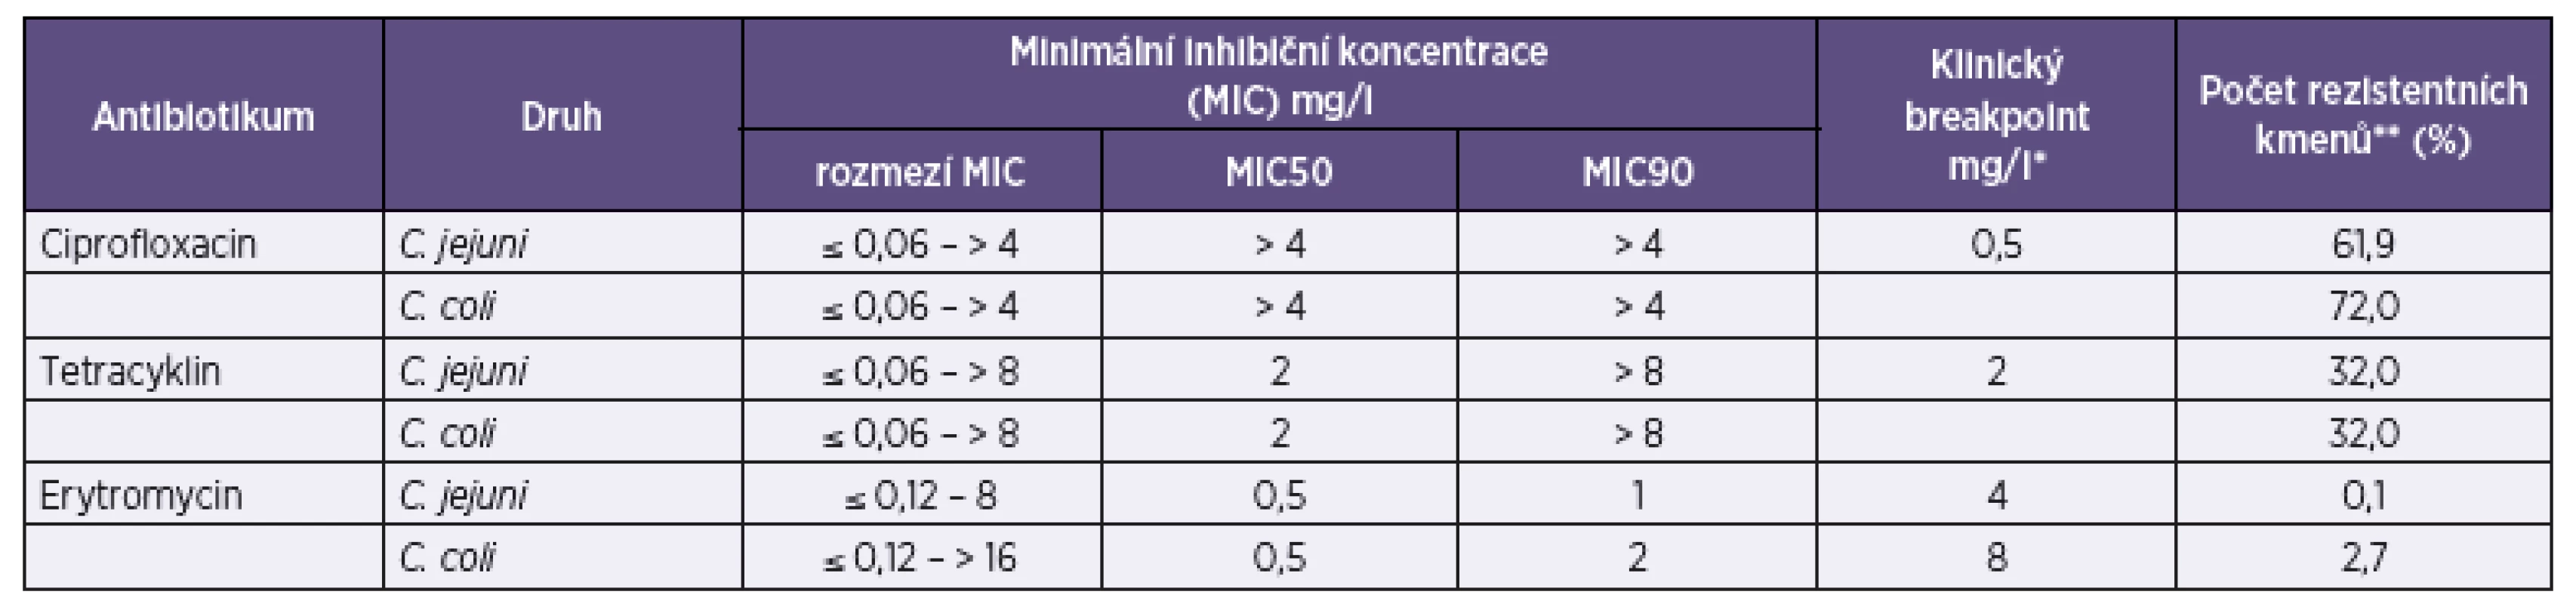 Rozmezí minimálních inhibičních koncentrací (MIC) antibiotik, MIC50 a MIC90, klinické breakpointy antibiotik [11] a frekvence rezistence k antibiotikům v souboru 693 kmenů <i>Campylobacter jejuni</i> a 75 kmenů <i>C. coli</i>
Table 2. MIC range, MIC<sub>50</sub> , MIC<sub>90</sub>, clinical breakpoints for antibiotics [11], and resistance rates in the set of 693 strains of <i>Campylobacter jejuni</i> and 75 strains of <i>C. coli</i>.